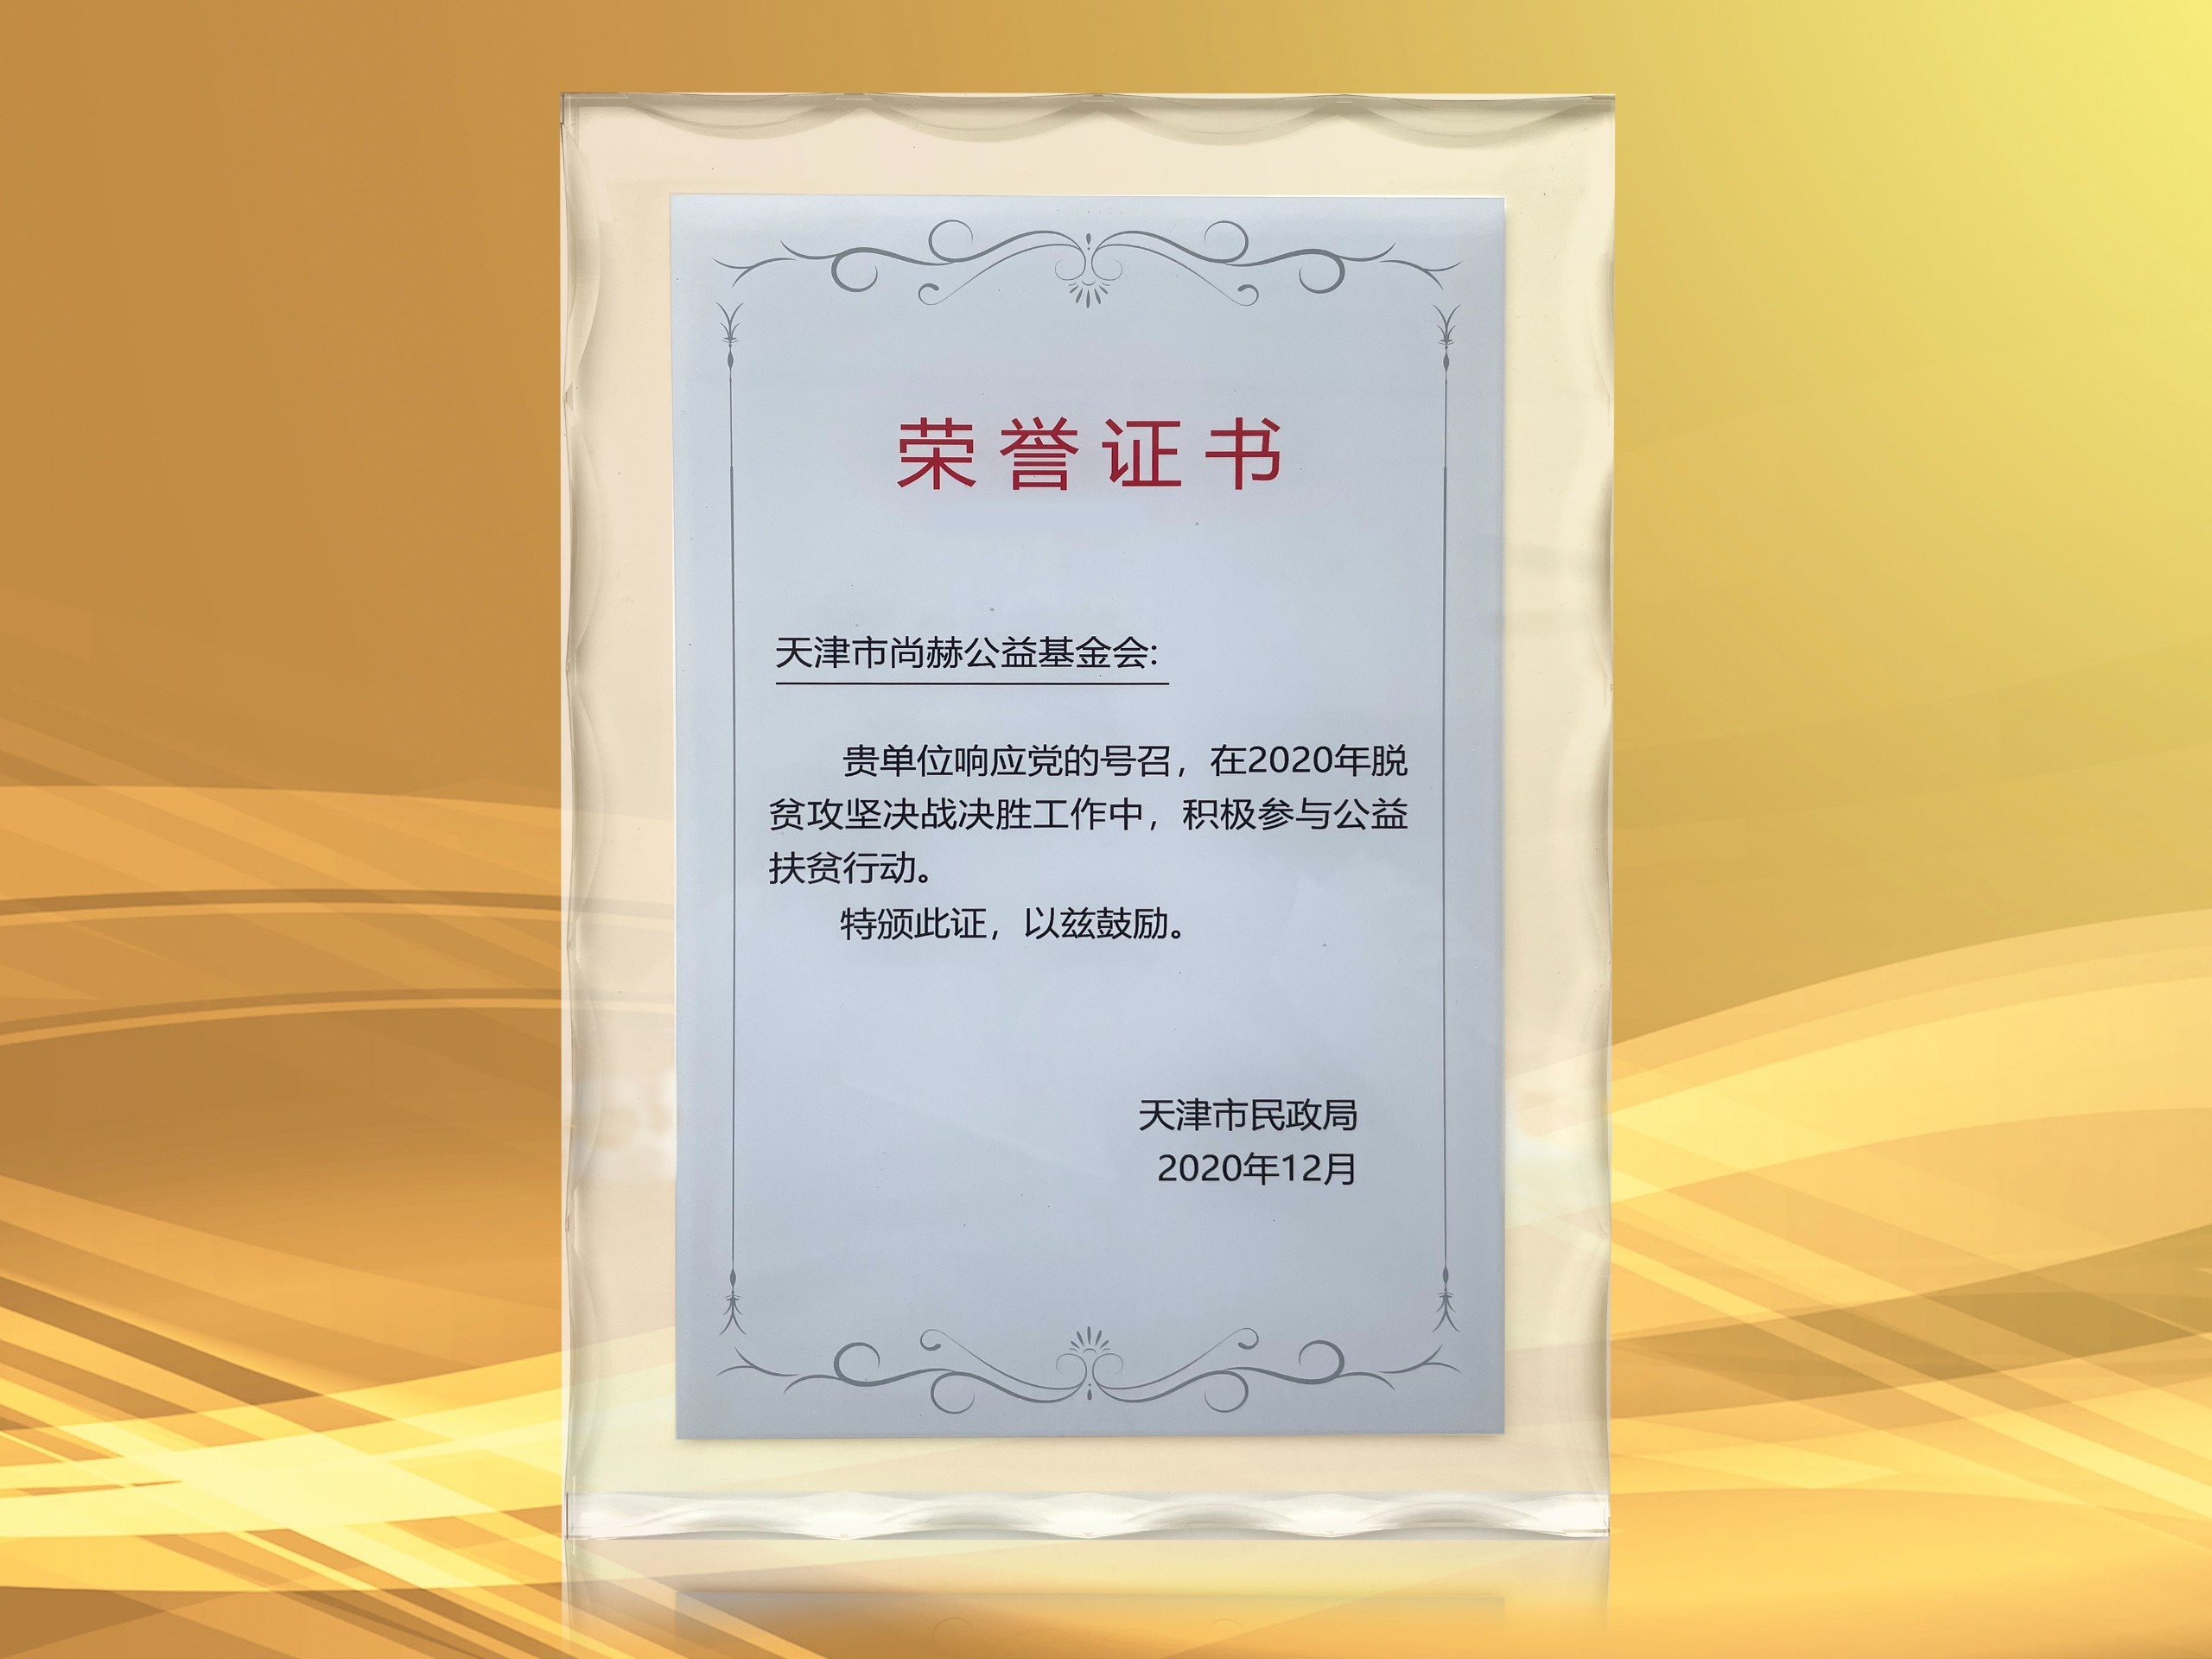 3月-尚赫公益基金会获得天津市民政局颁发的荣誉证书